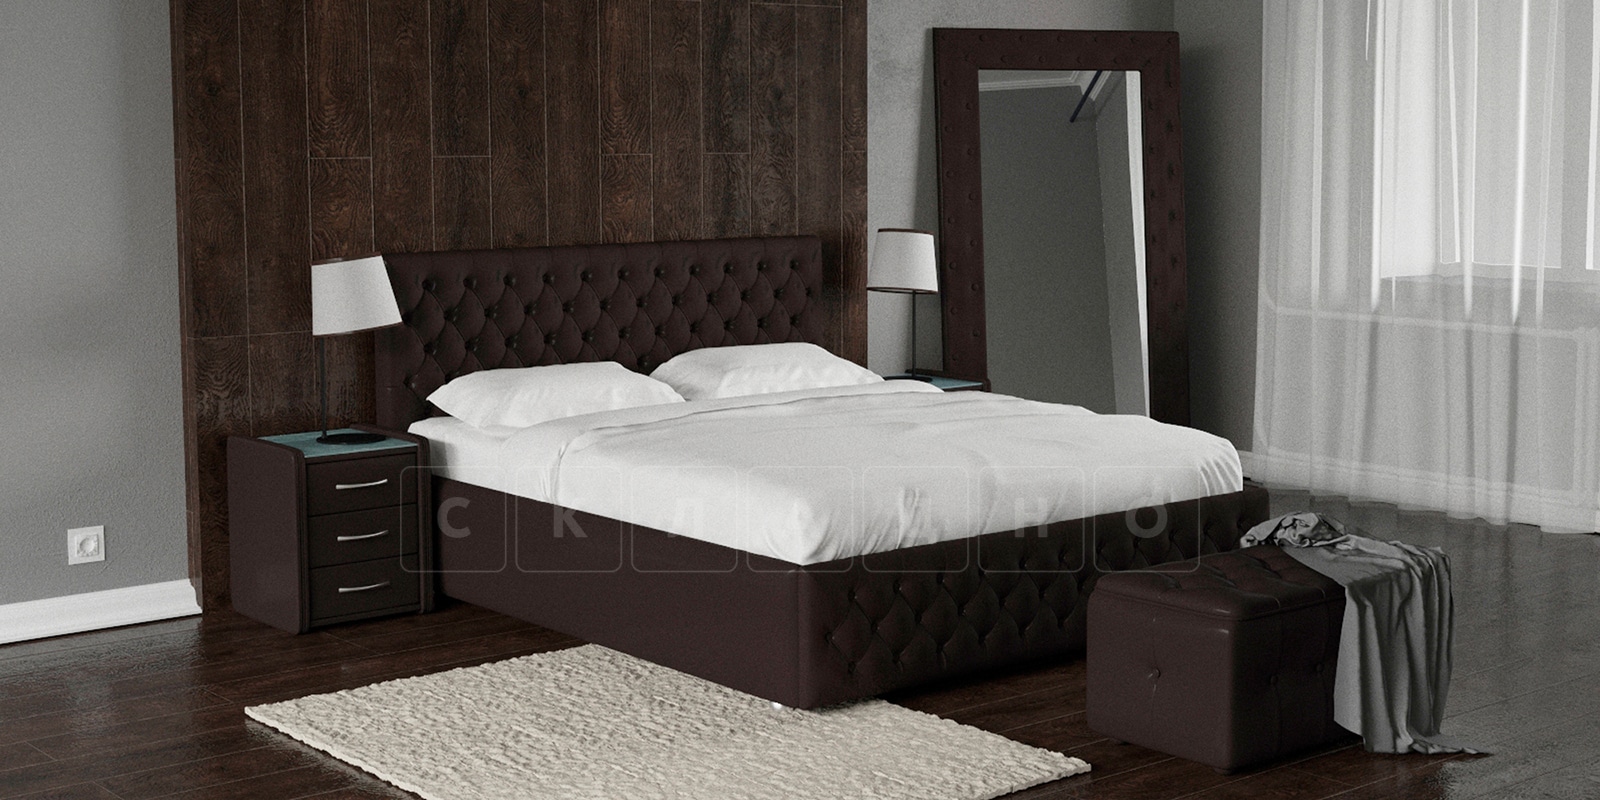 Мягкая кровать Малибу 160см экокожа шоколадного цвета вариант 4 фото 1 | интернет-магазин Складно